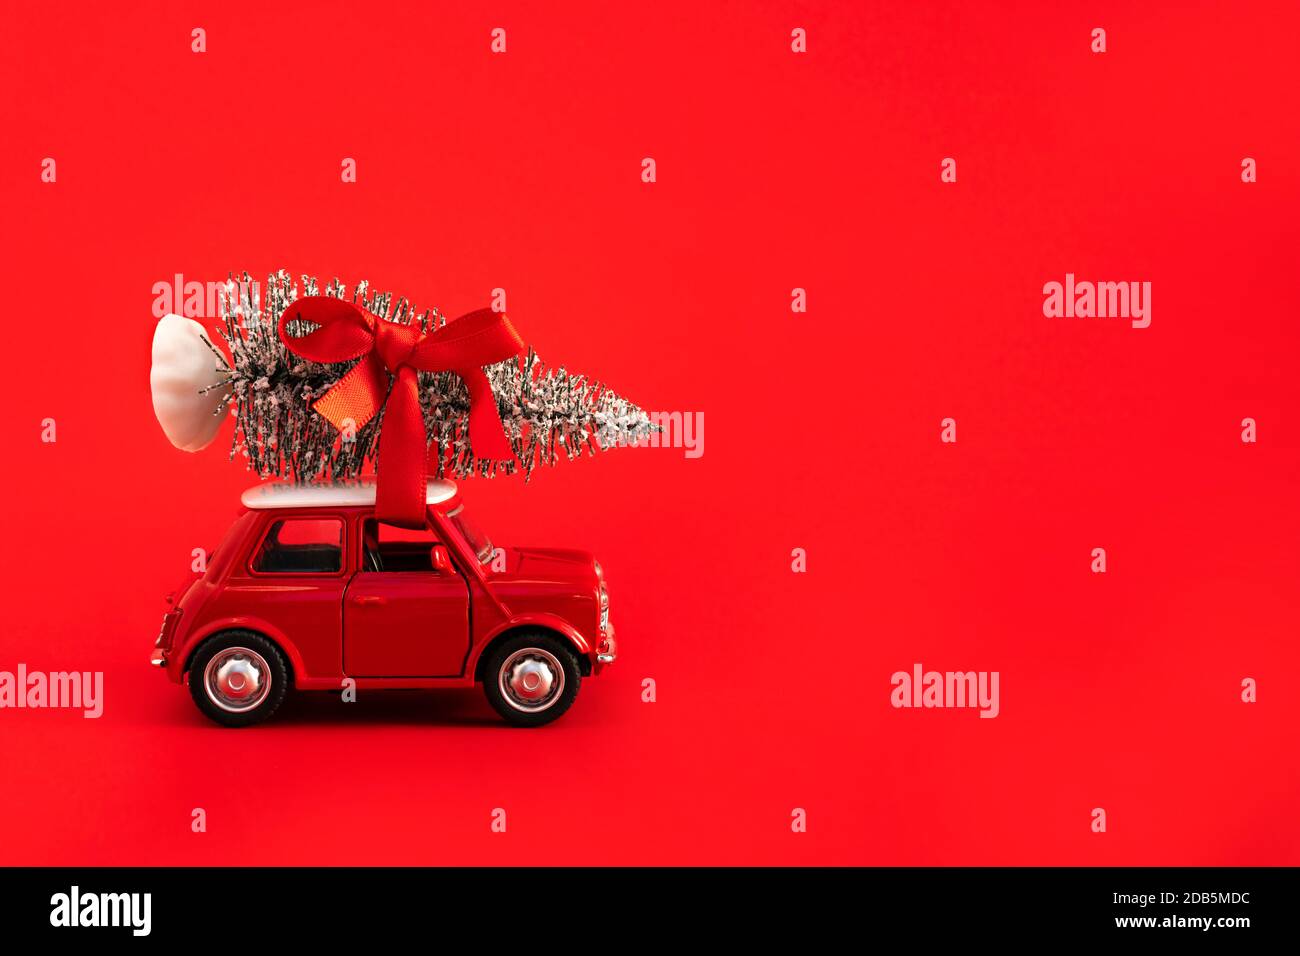 Rotes Spielzeug Auto trägt Weihnachtsbaum mit rotem Band auf dem Dach auf rotem Hintergrund. Platz für Text auf der rechten Seite. Stockfoto